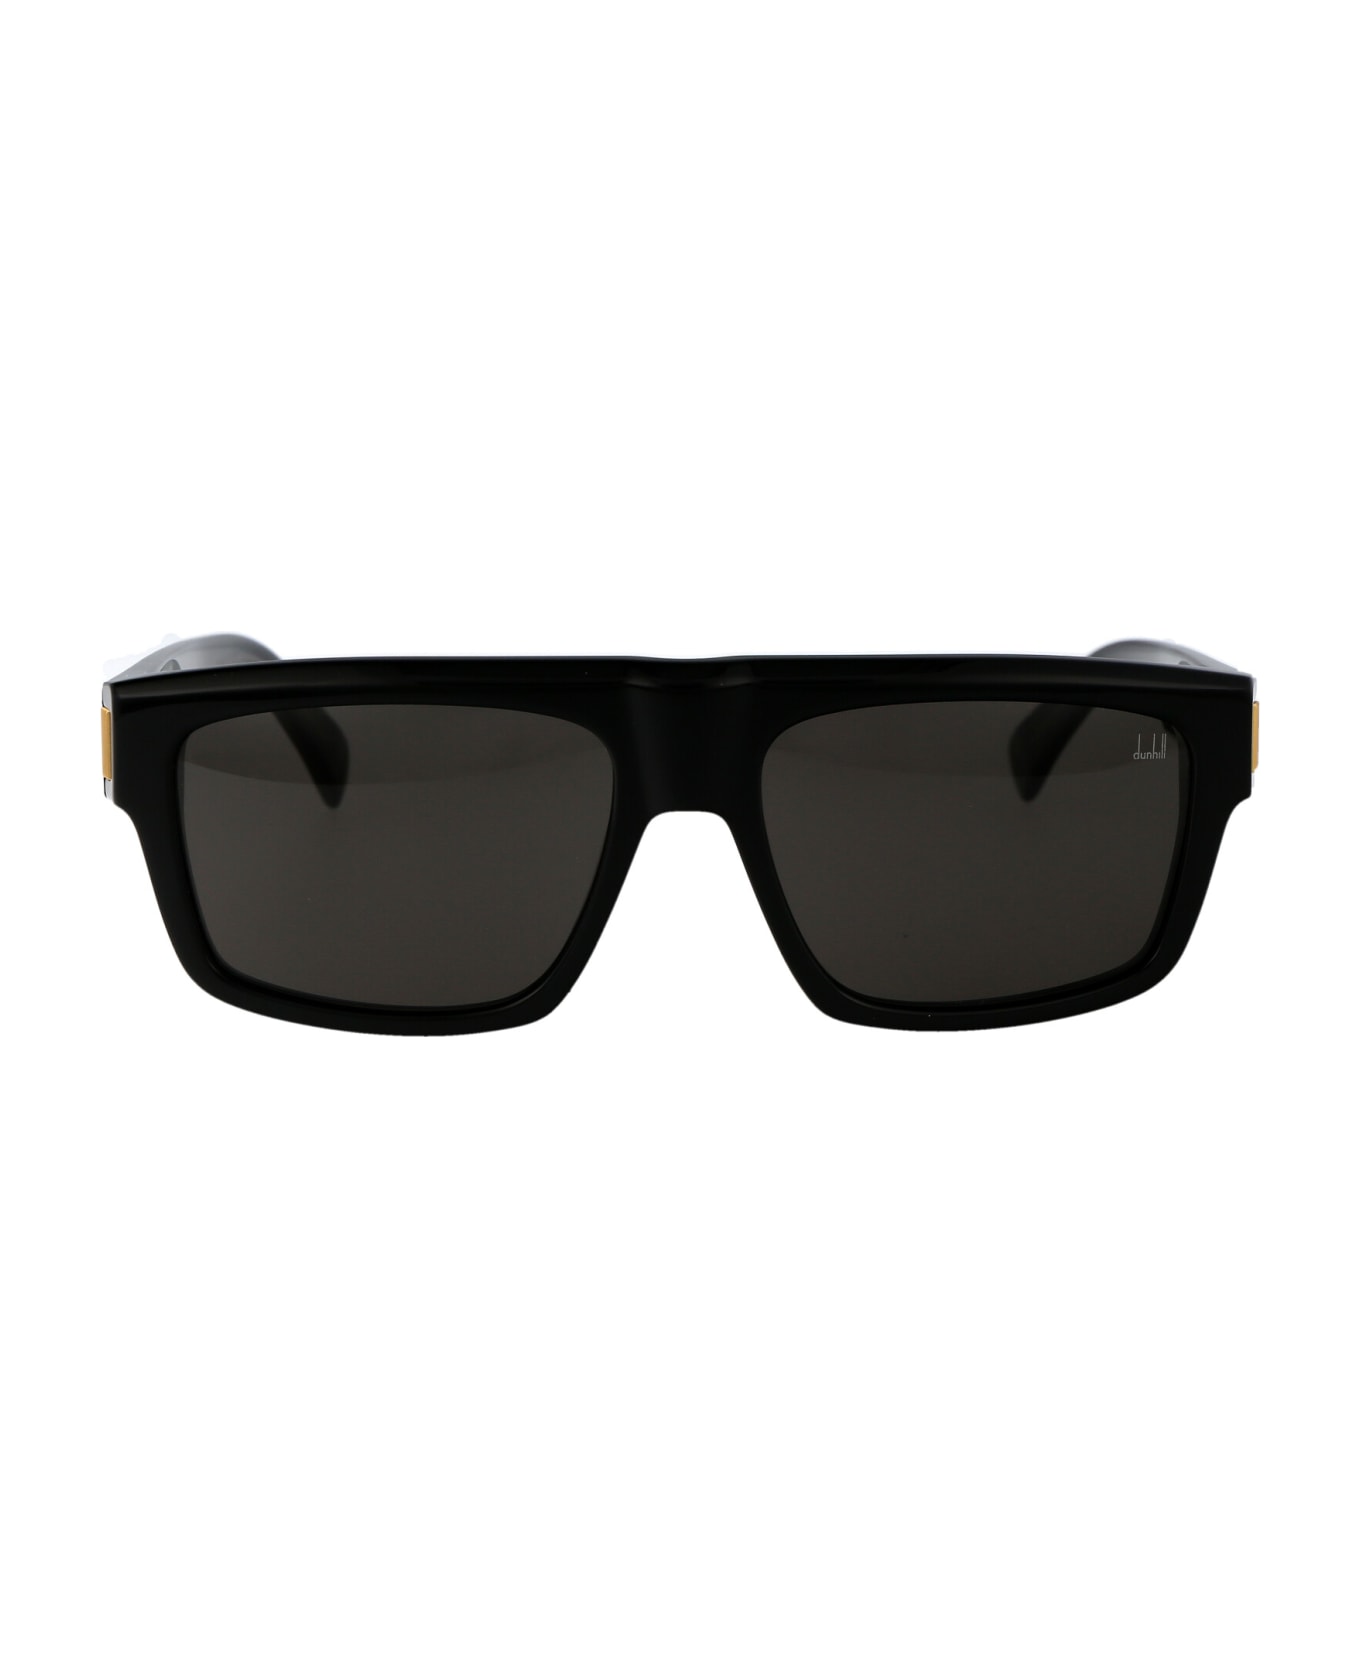 Dunhill Du0055s Sunglasses - 001 BLACK BLACK GREY サングラス